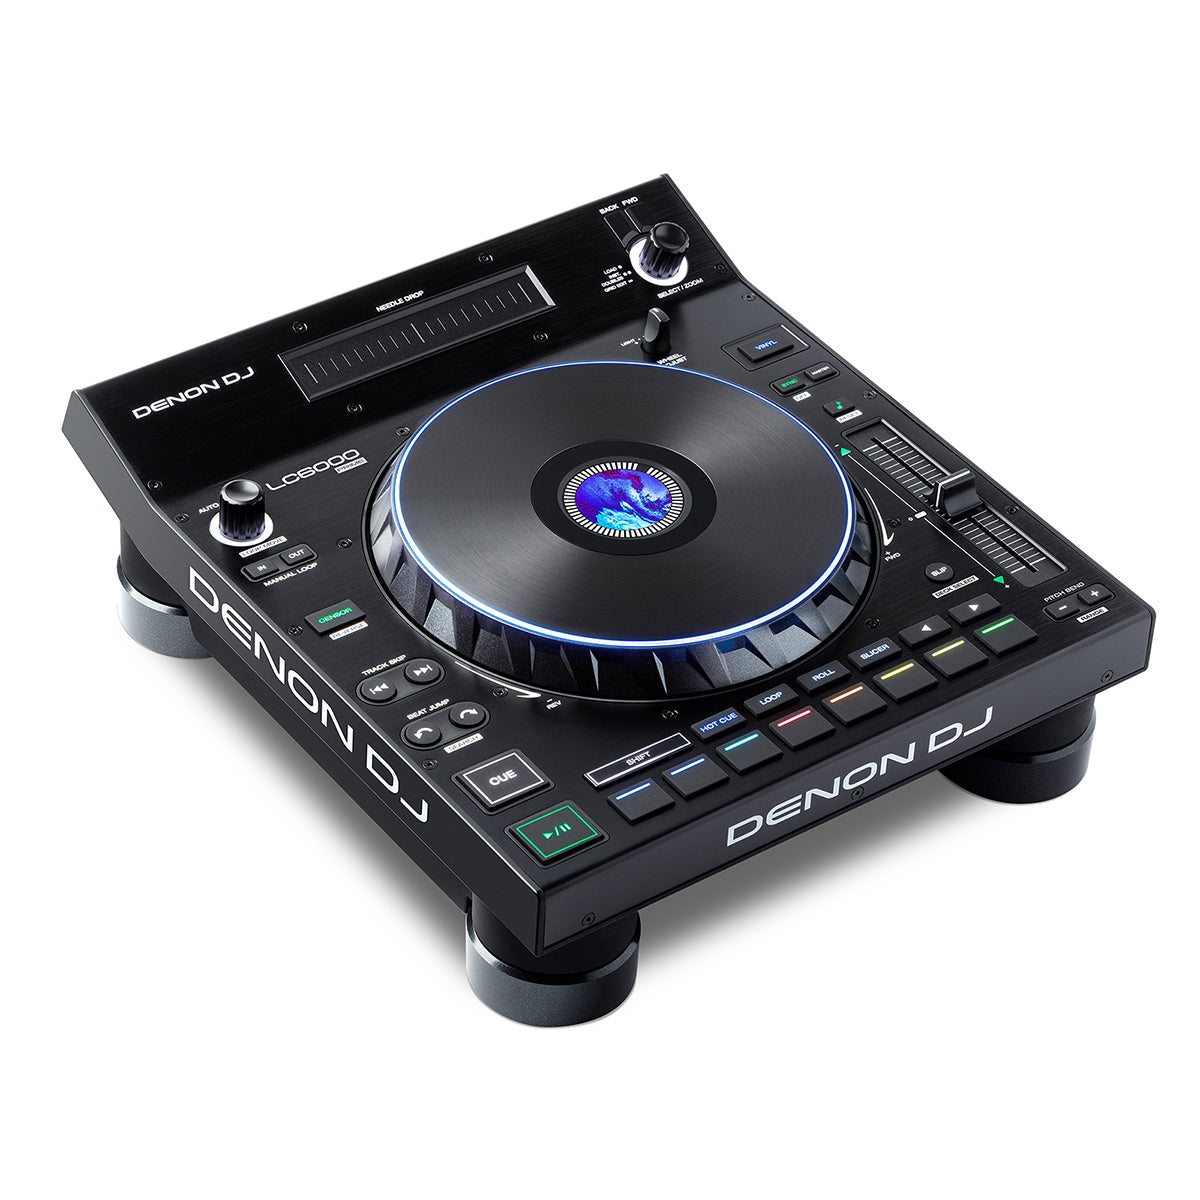 Denon DJ SC6000M + X1850 + Free LC6000 Bundle